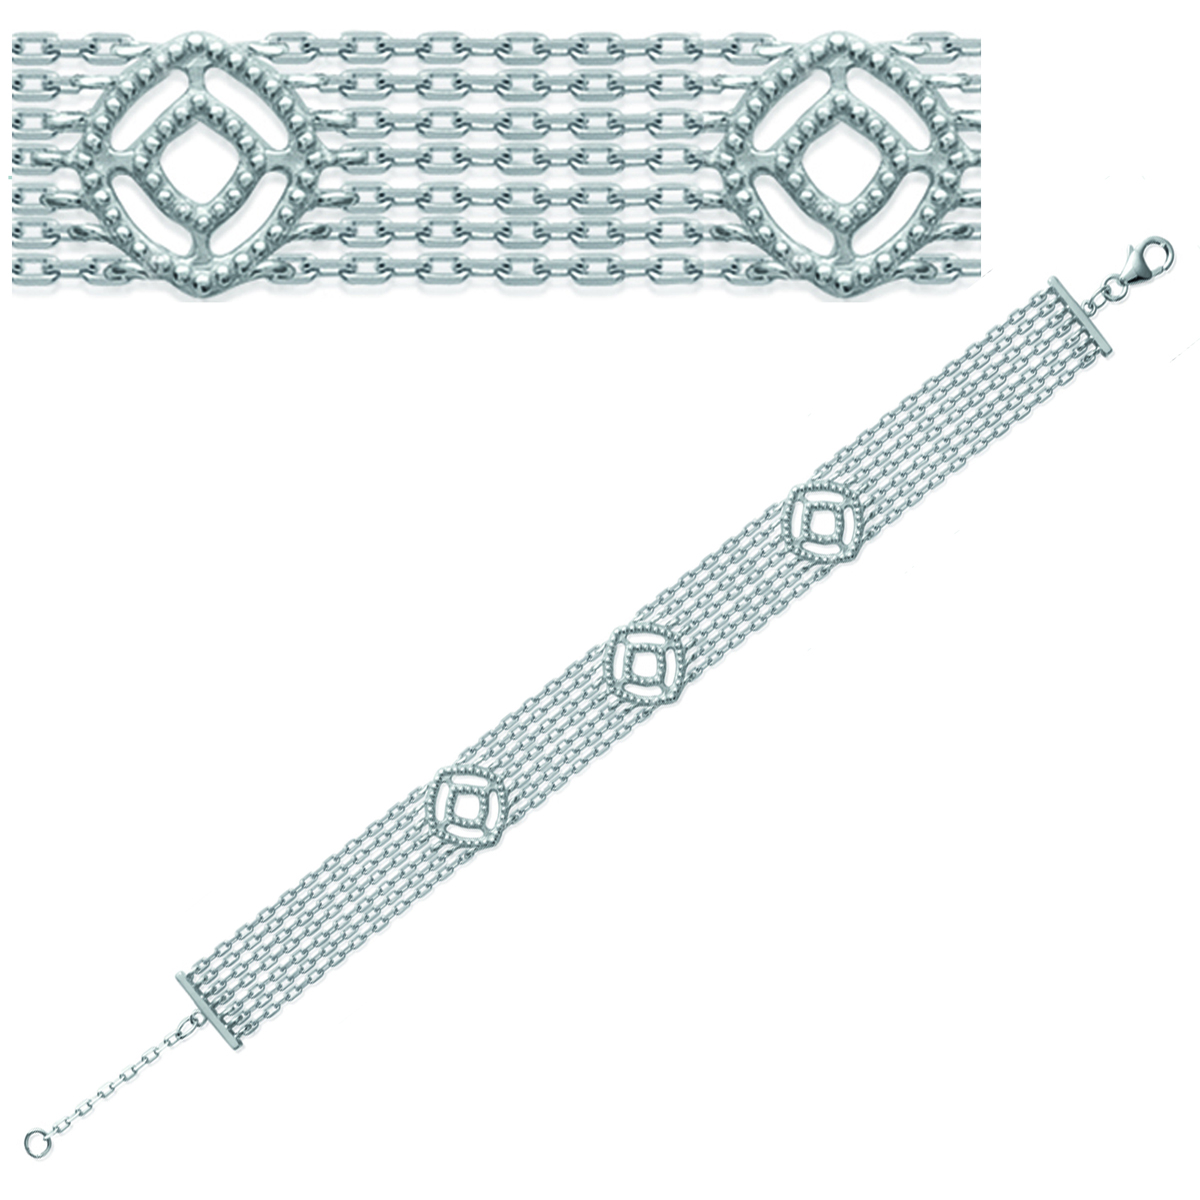 Bracelet Argent \'Cléopatra\' argenté (rhodié) - 12 mm (7 rangs) - [K3393]